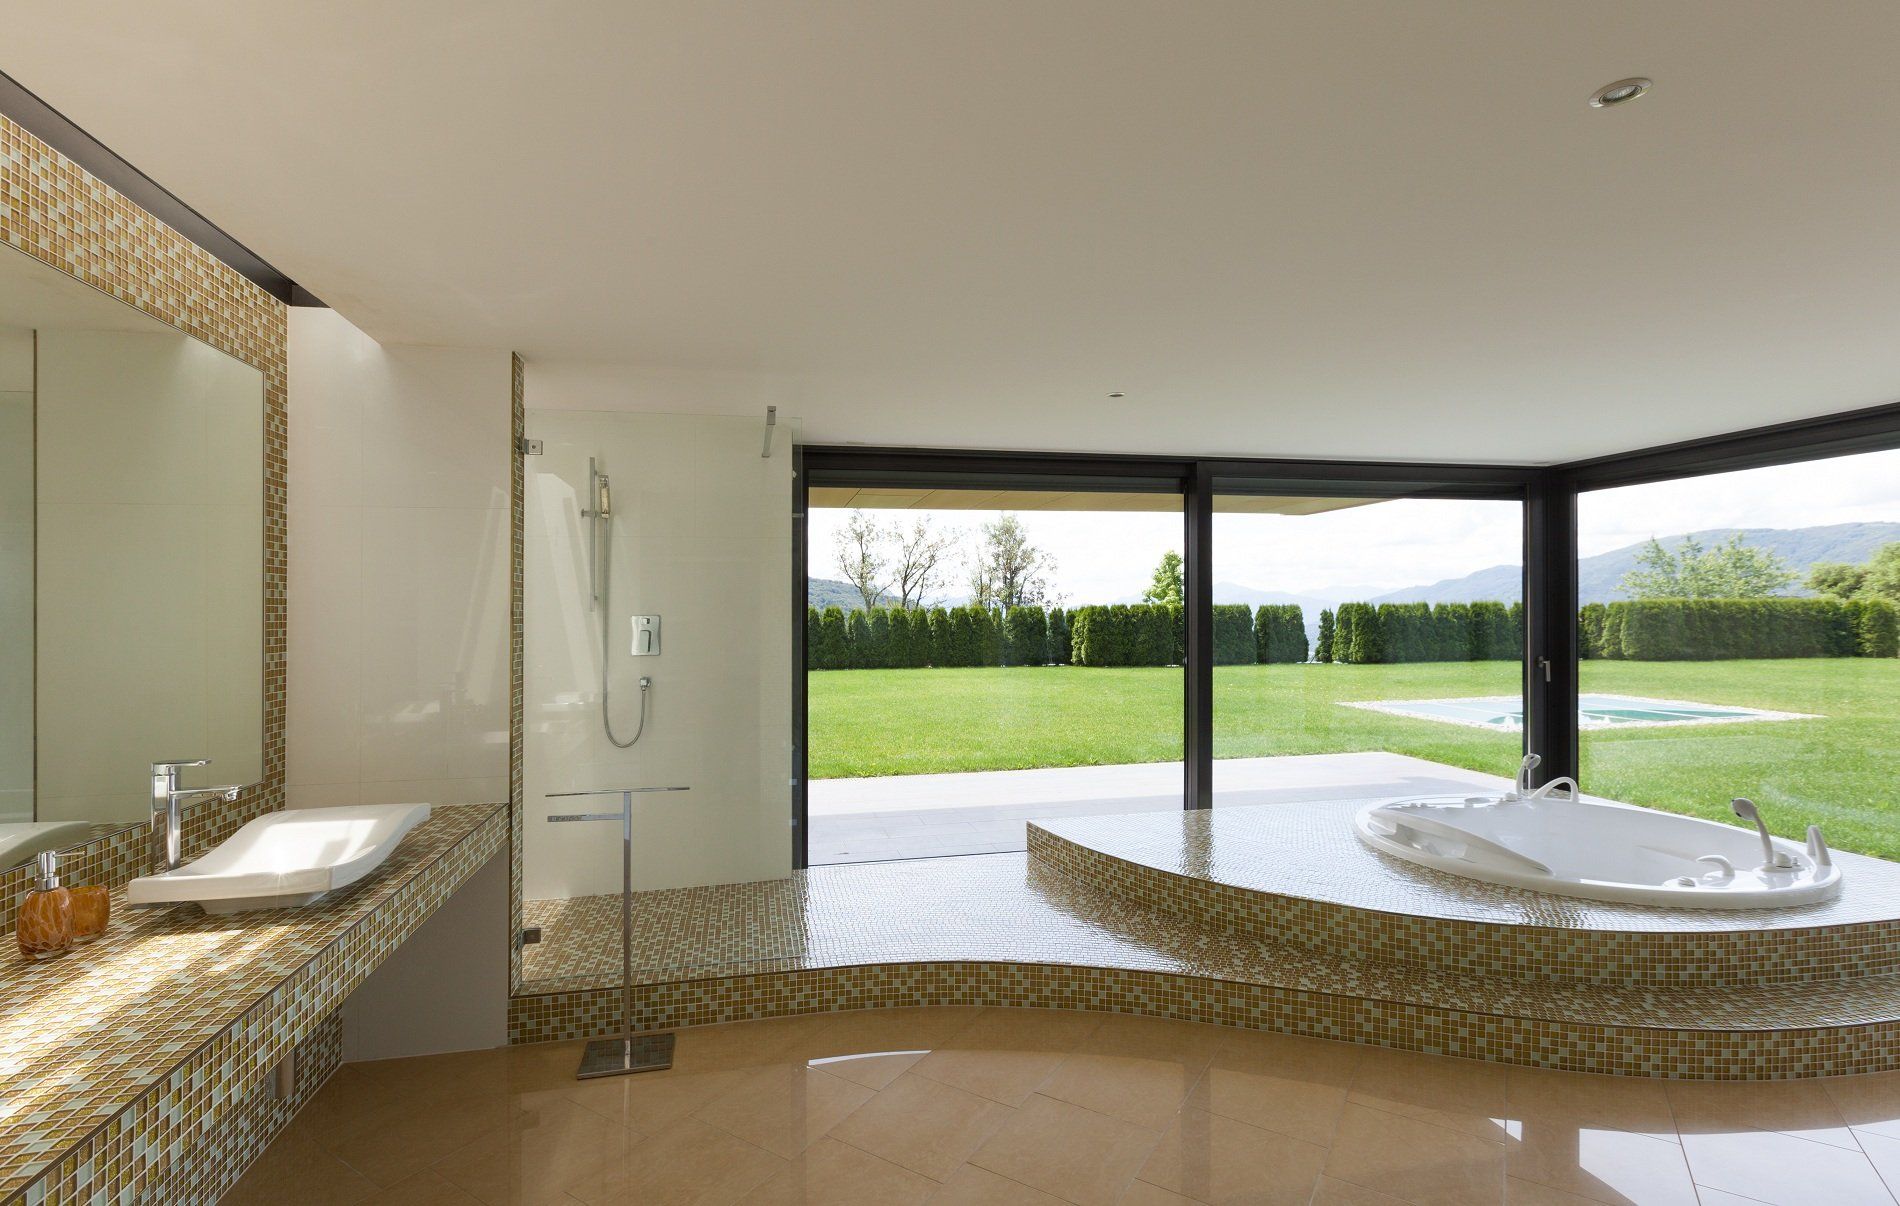 Bagno con pavimento in marmo e pareti,lavabo,zona doccia e vasca con rivestimento in piastrelle di porcellana di colore marrone e bianco